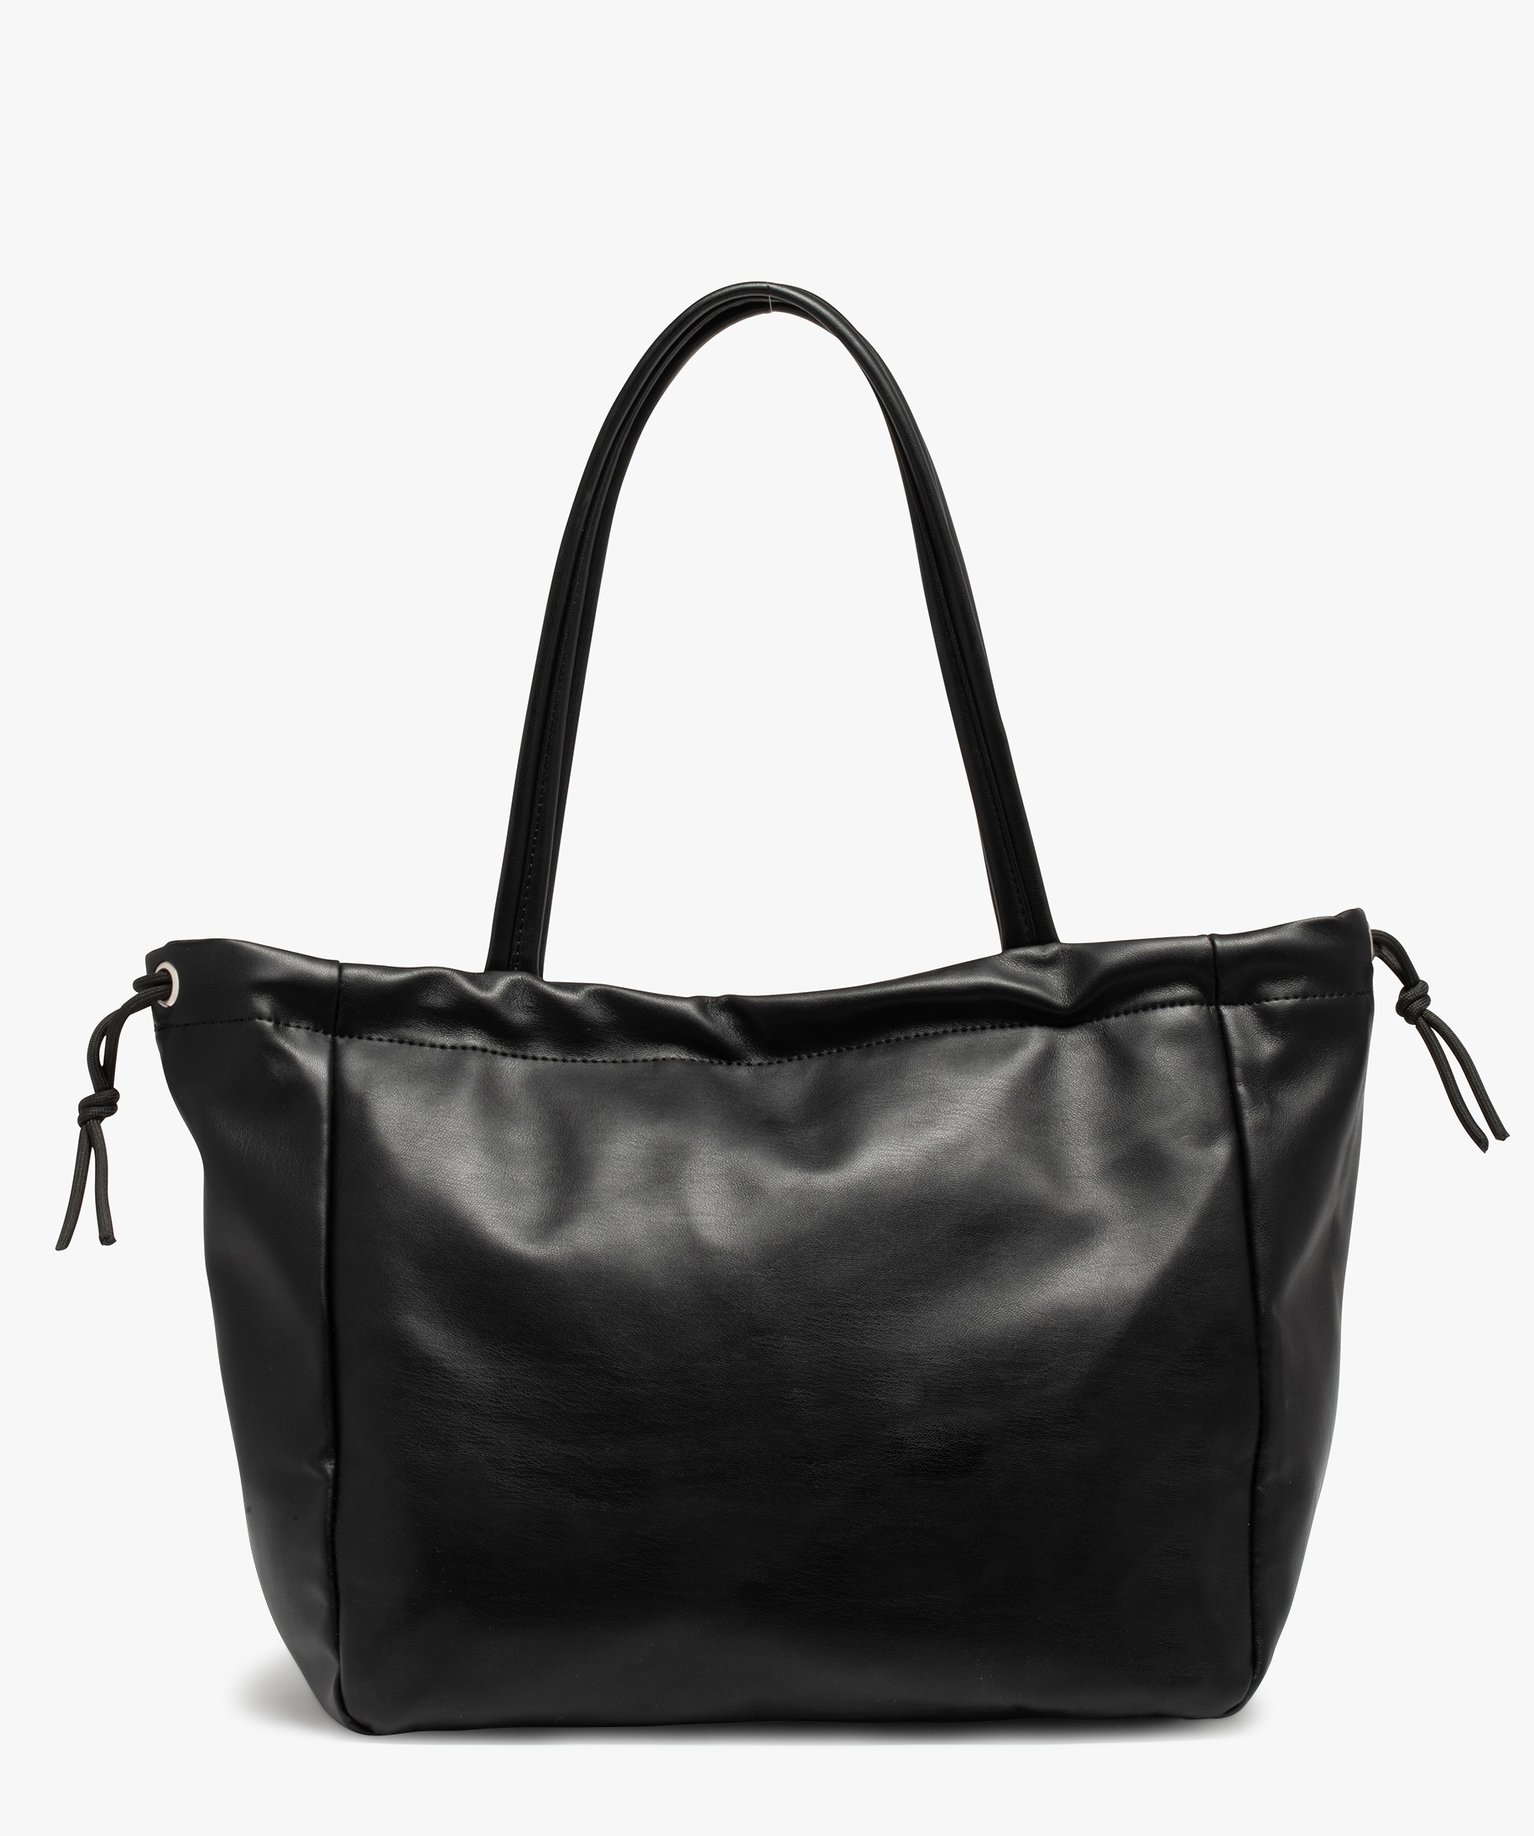 sac femme forme cabas avec fermeture reglable noir sacs a main